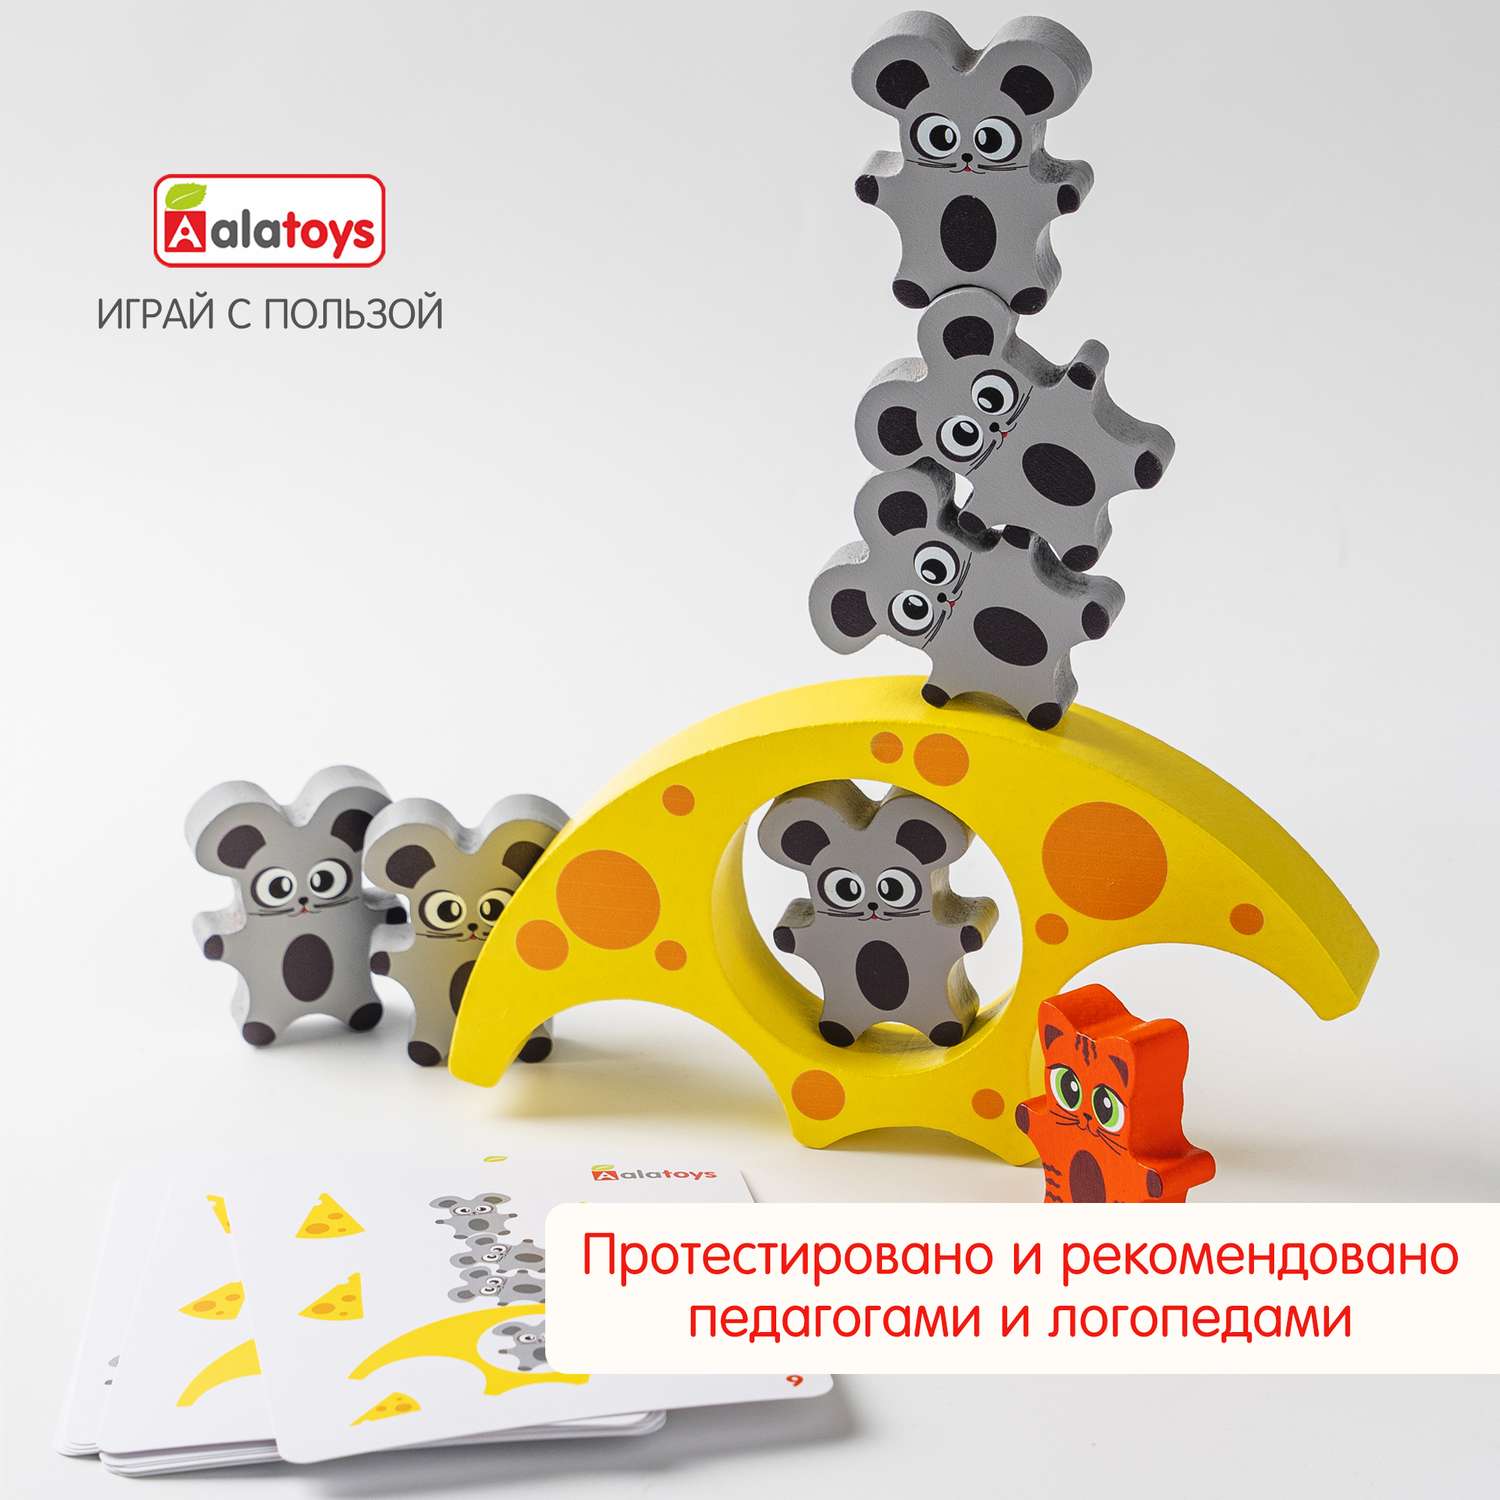 Балансир Кошки-Мышки Alatoys 8 фигурок деревянная развивающая игра - фото 3